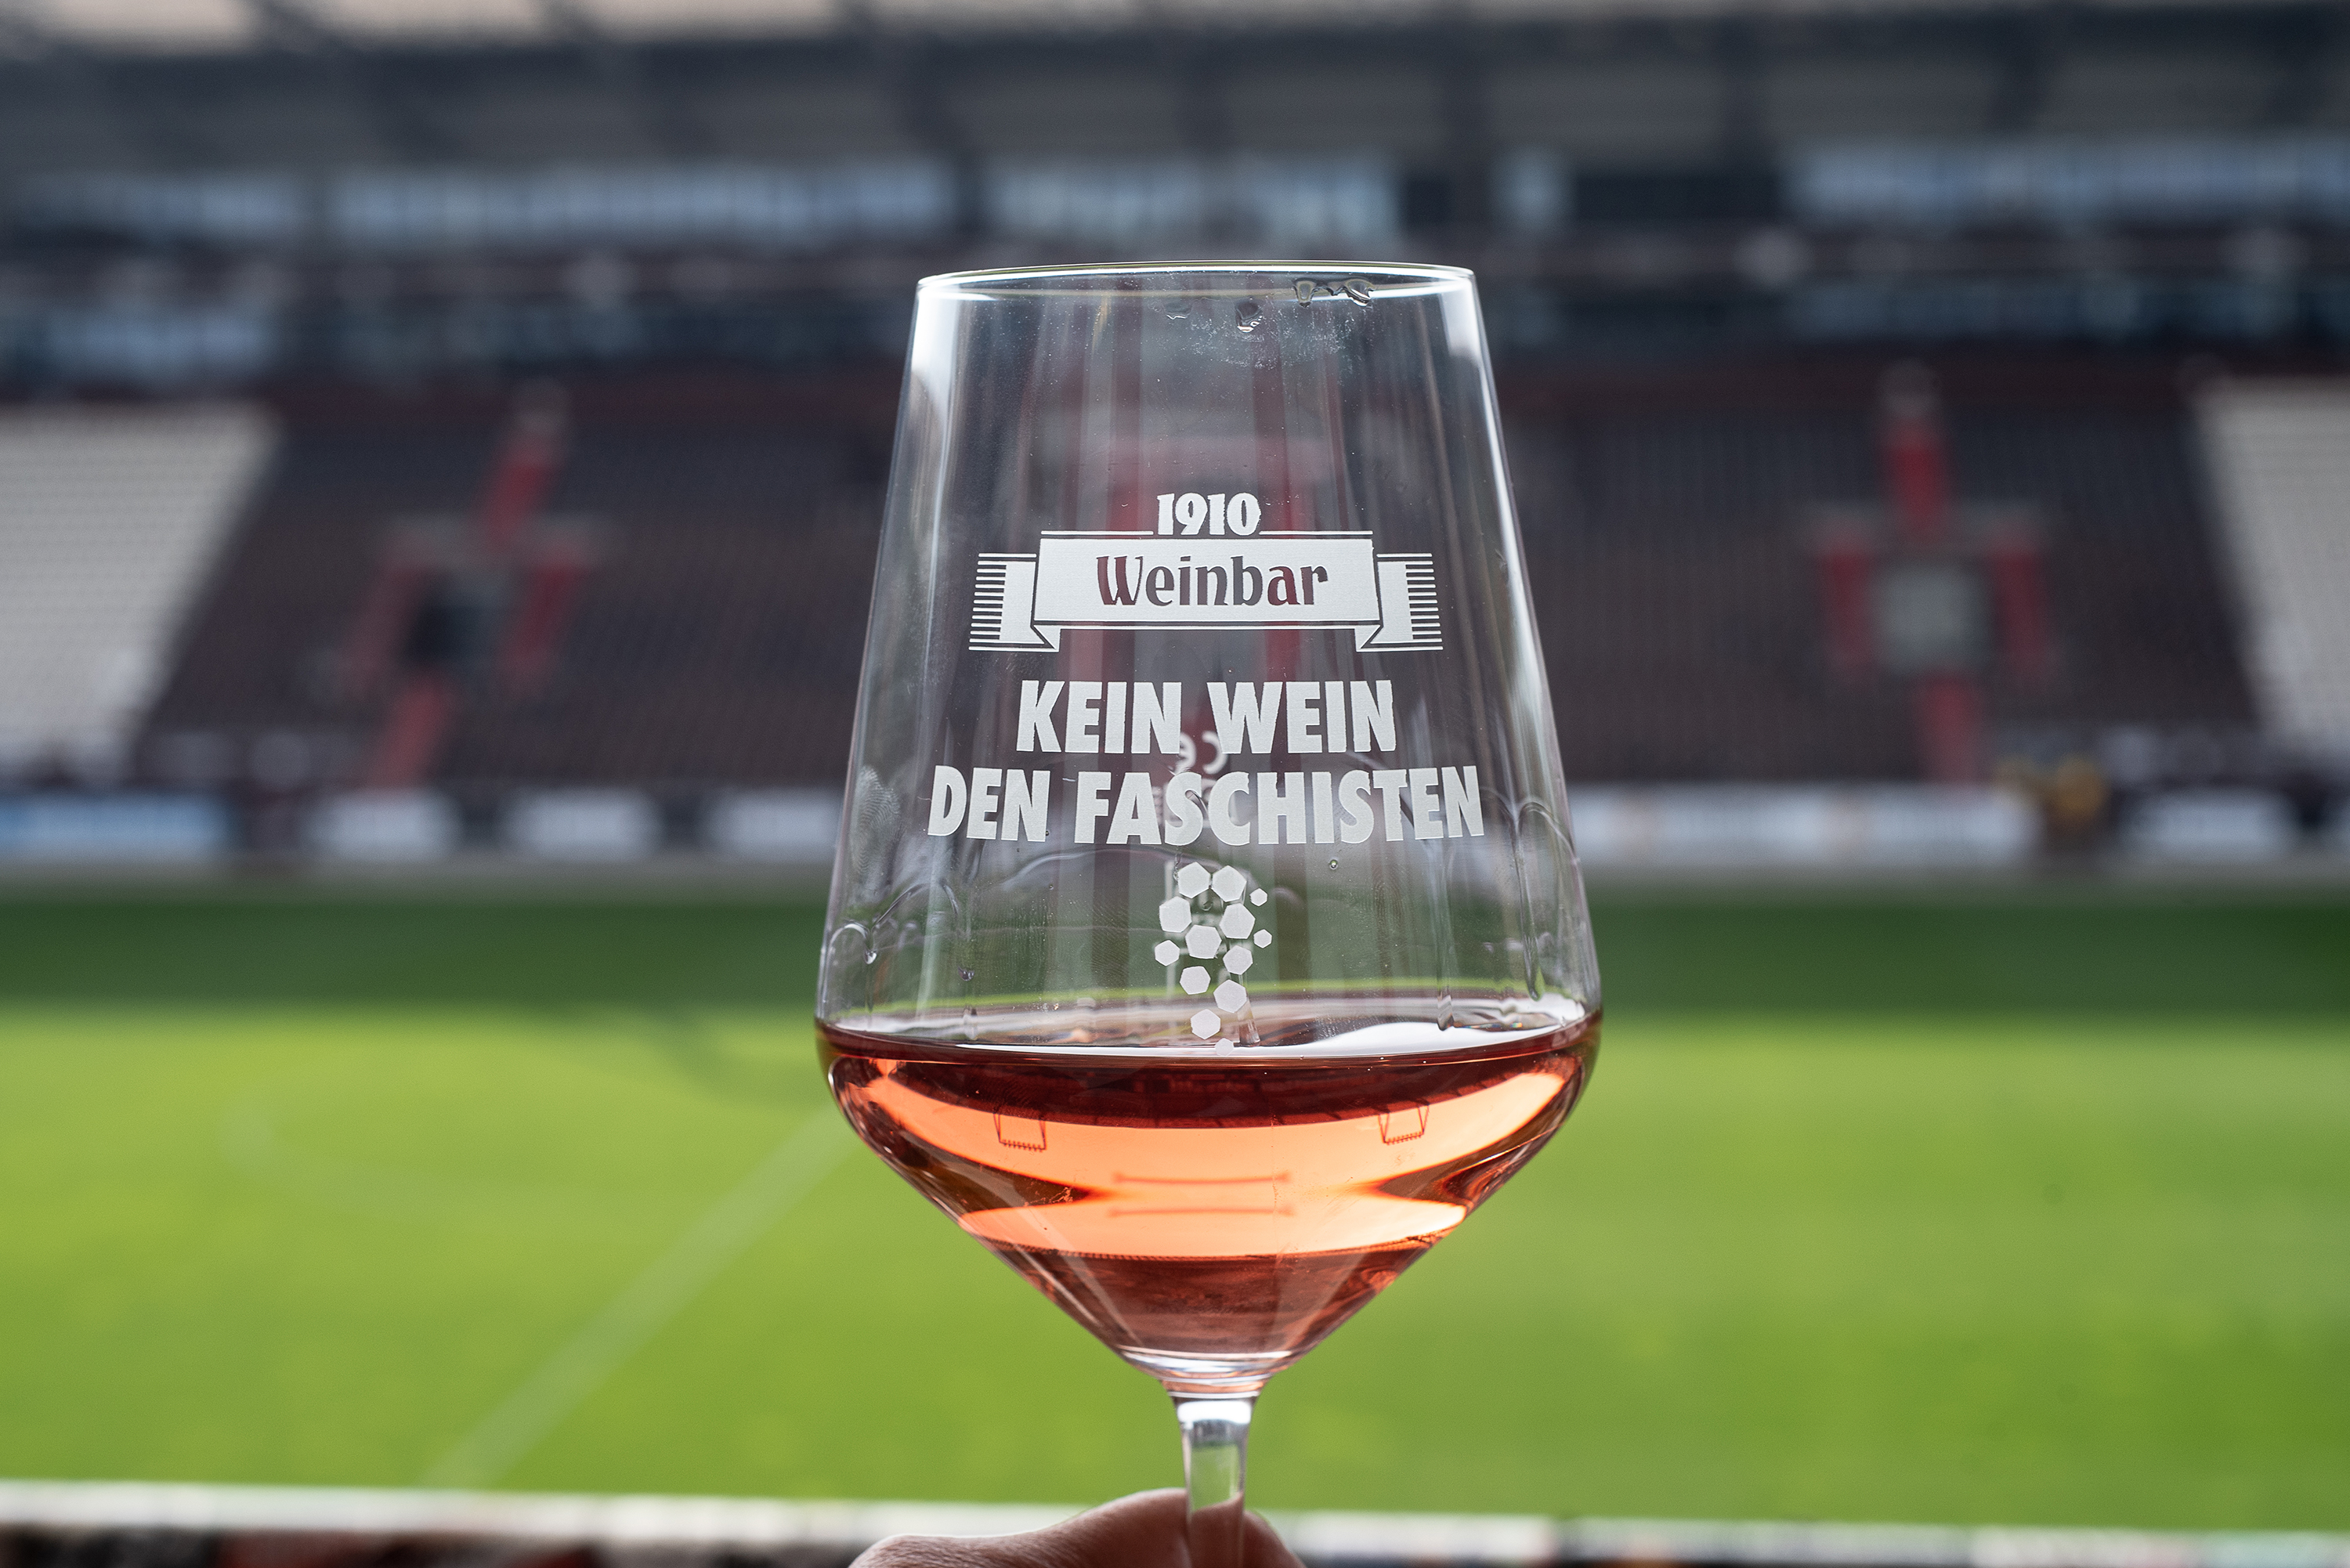 „Kein Wein den Faschisten“ ist das Motto der Wein- und Merchkollektion des FC St. Pauli-Museums und seiner 1910-Weinbar.